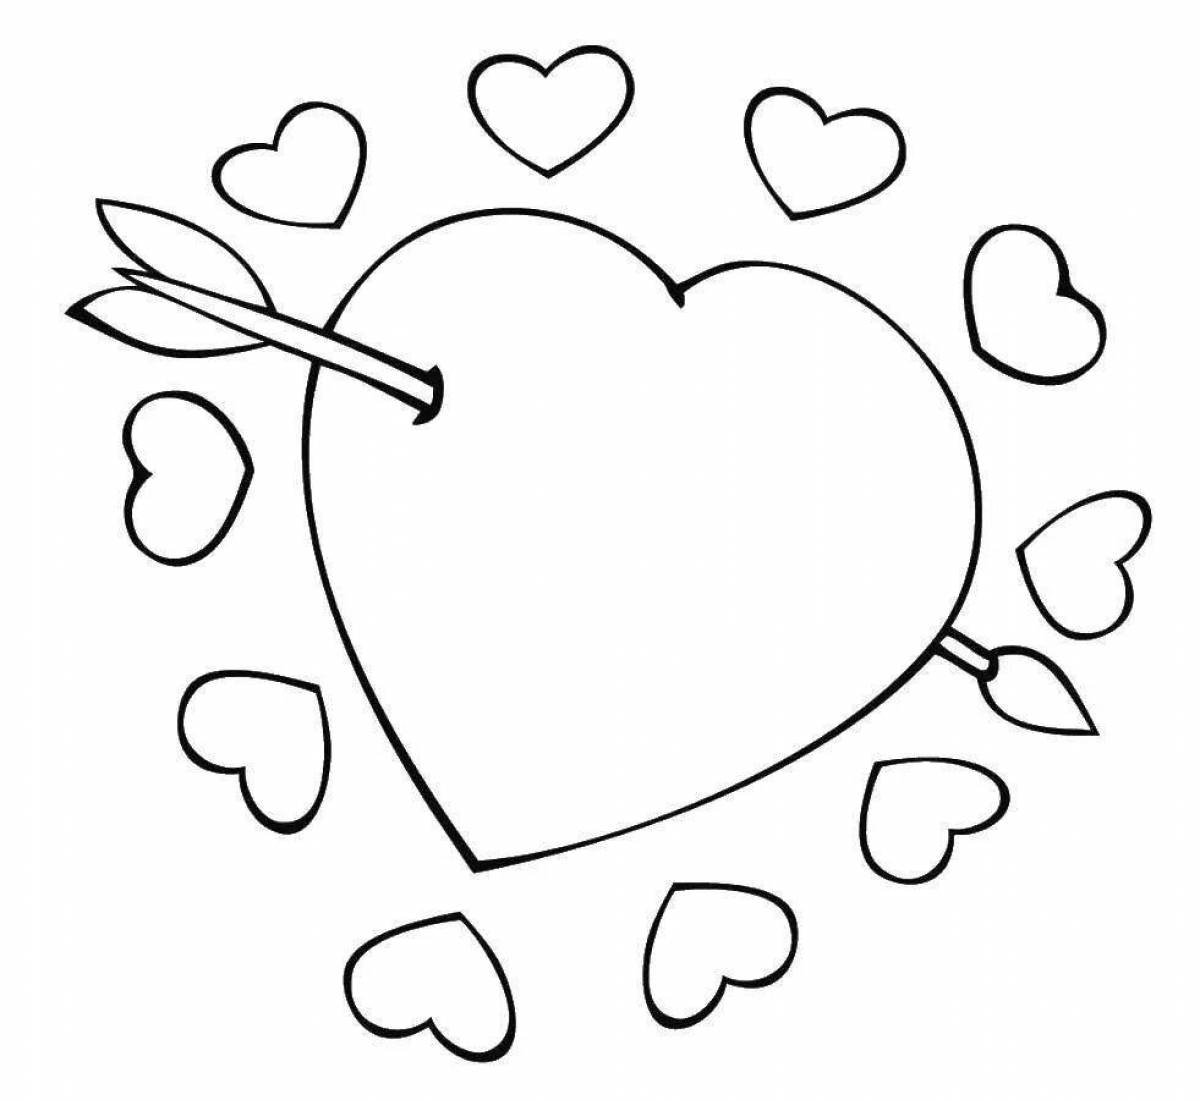 Раскраска сердце с цветными брызгами для детей 5-6 лет